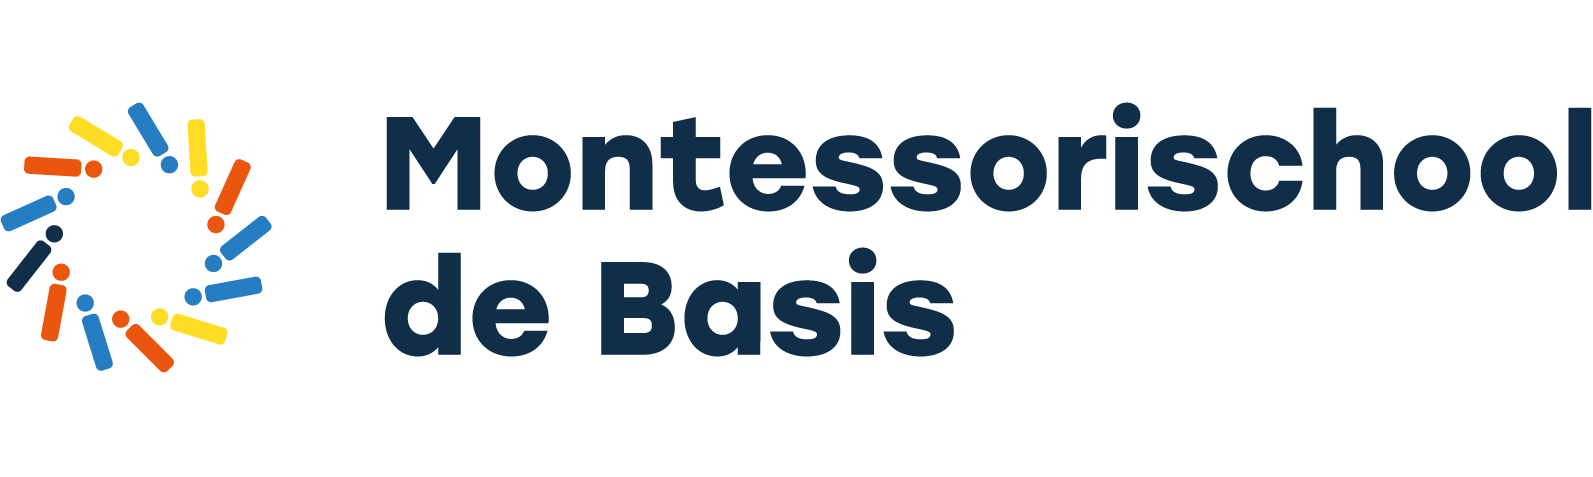 Montessorischool De Basis - Goes